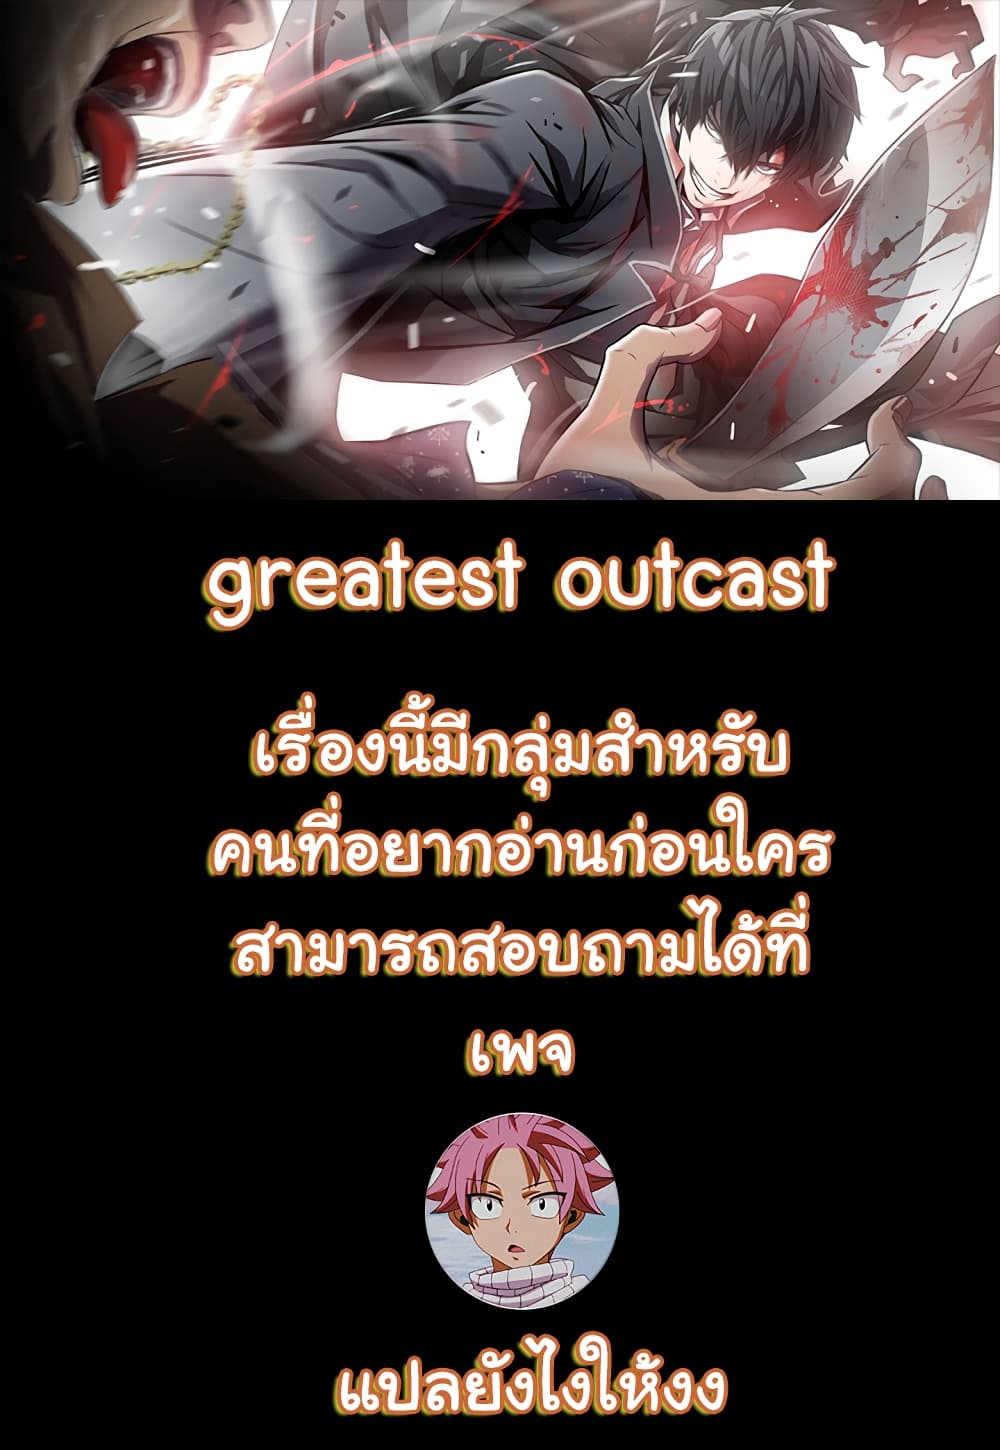 Greatest Outcast 2 01